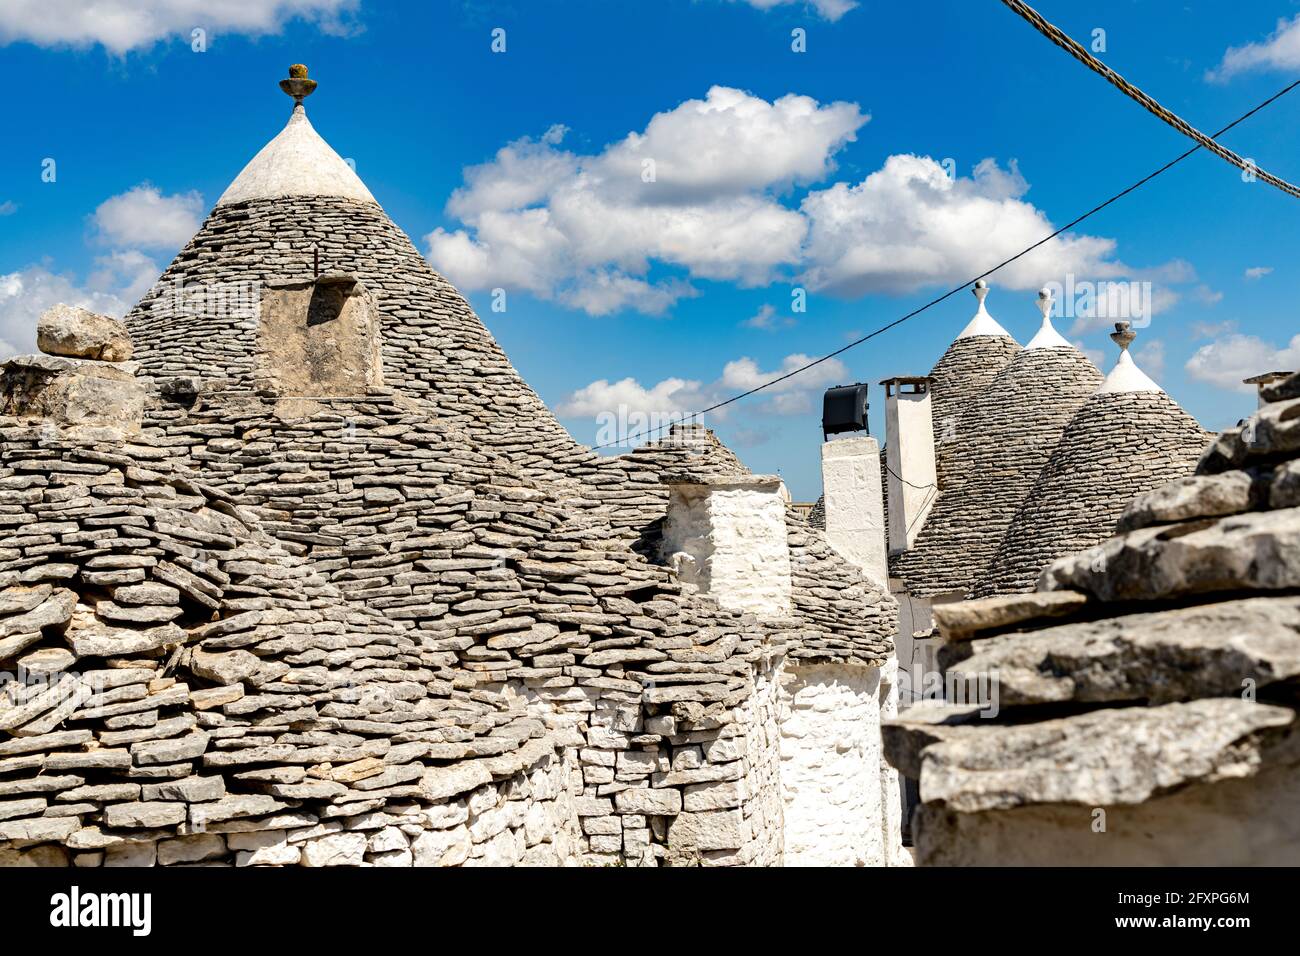 Dettagli sui tetti conici in pietra delle case tradizionali Trulli, Alberobello, Patrimonio dell'Umanità dell'UNESCO, provincia di Bari, Puglia, Italia, Europa Foto Stock